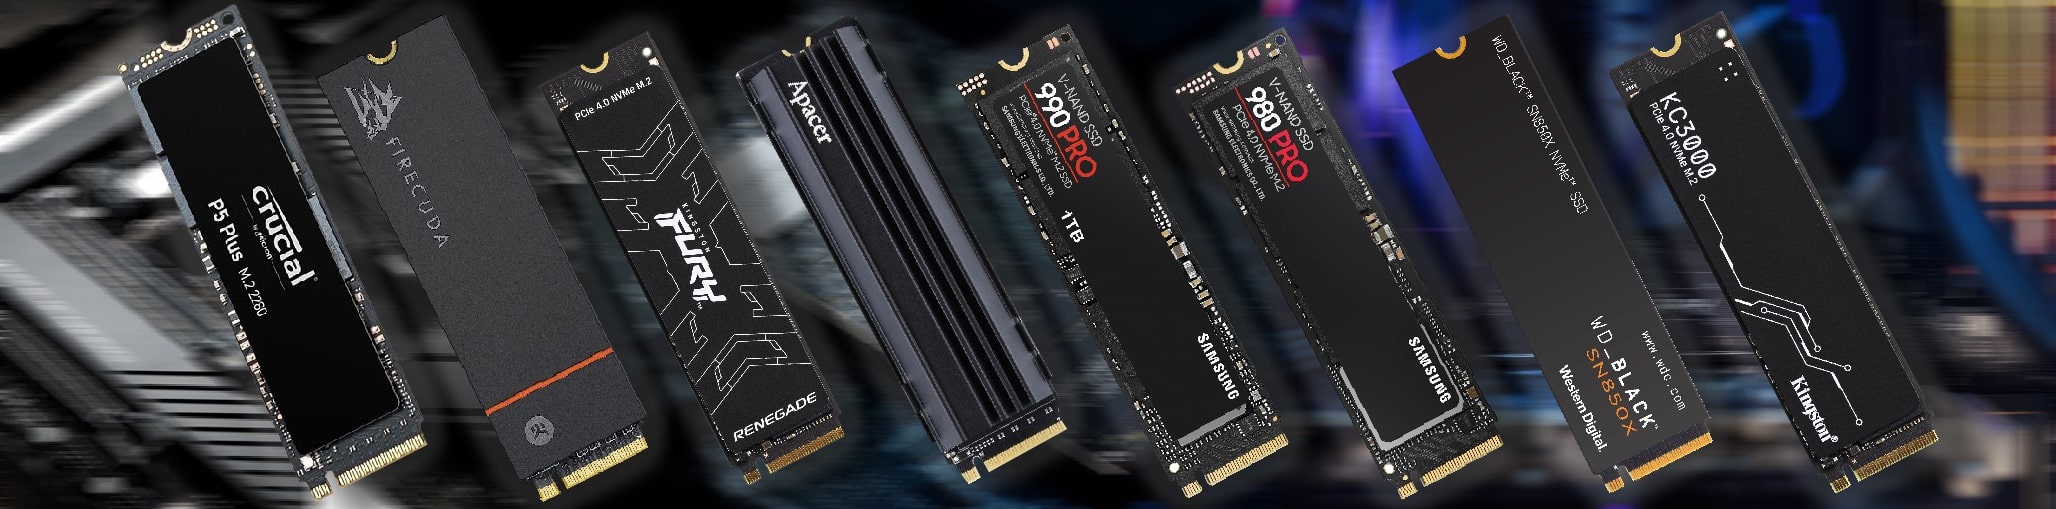 SSD NVMe PCIe 4.0 (VEĽKÝ POROVNÁVACÍ TEST)